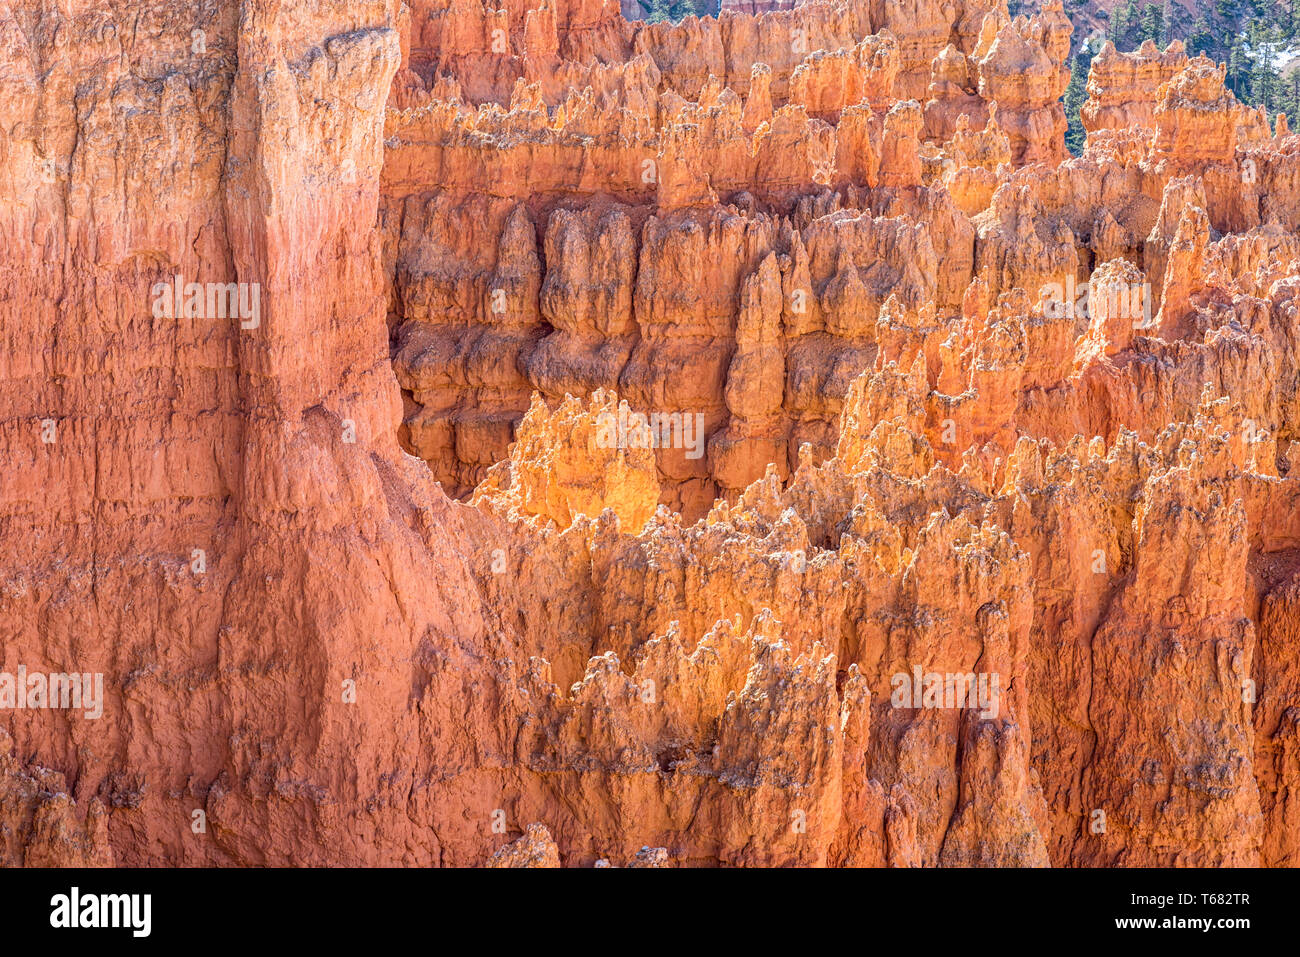 Les formations rocheuses en vue de l'Amphithéâtre de Bryce Sunset Point. Bryce Canyon National Park, Utah, USA. Banque D'Images